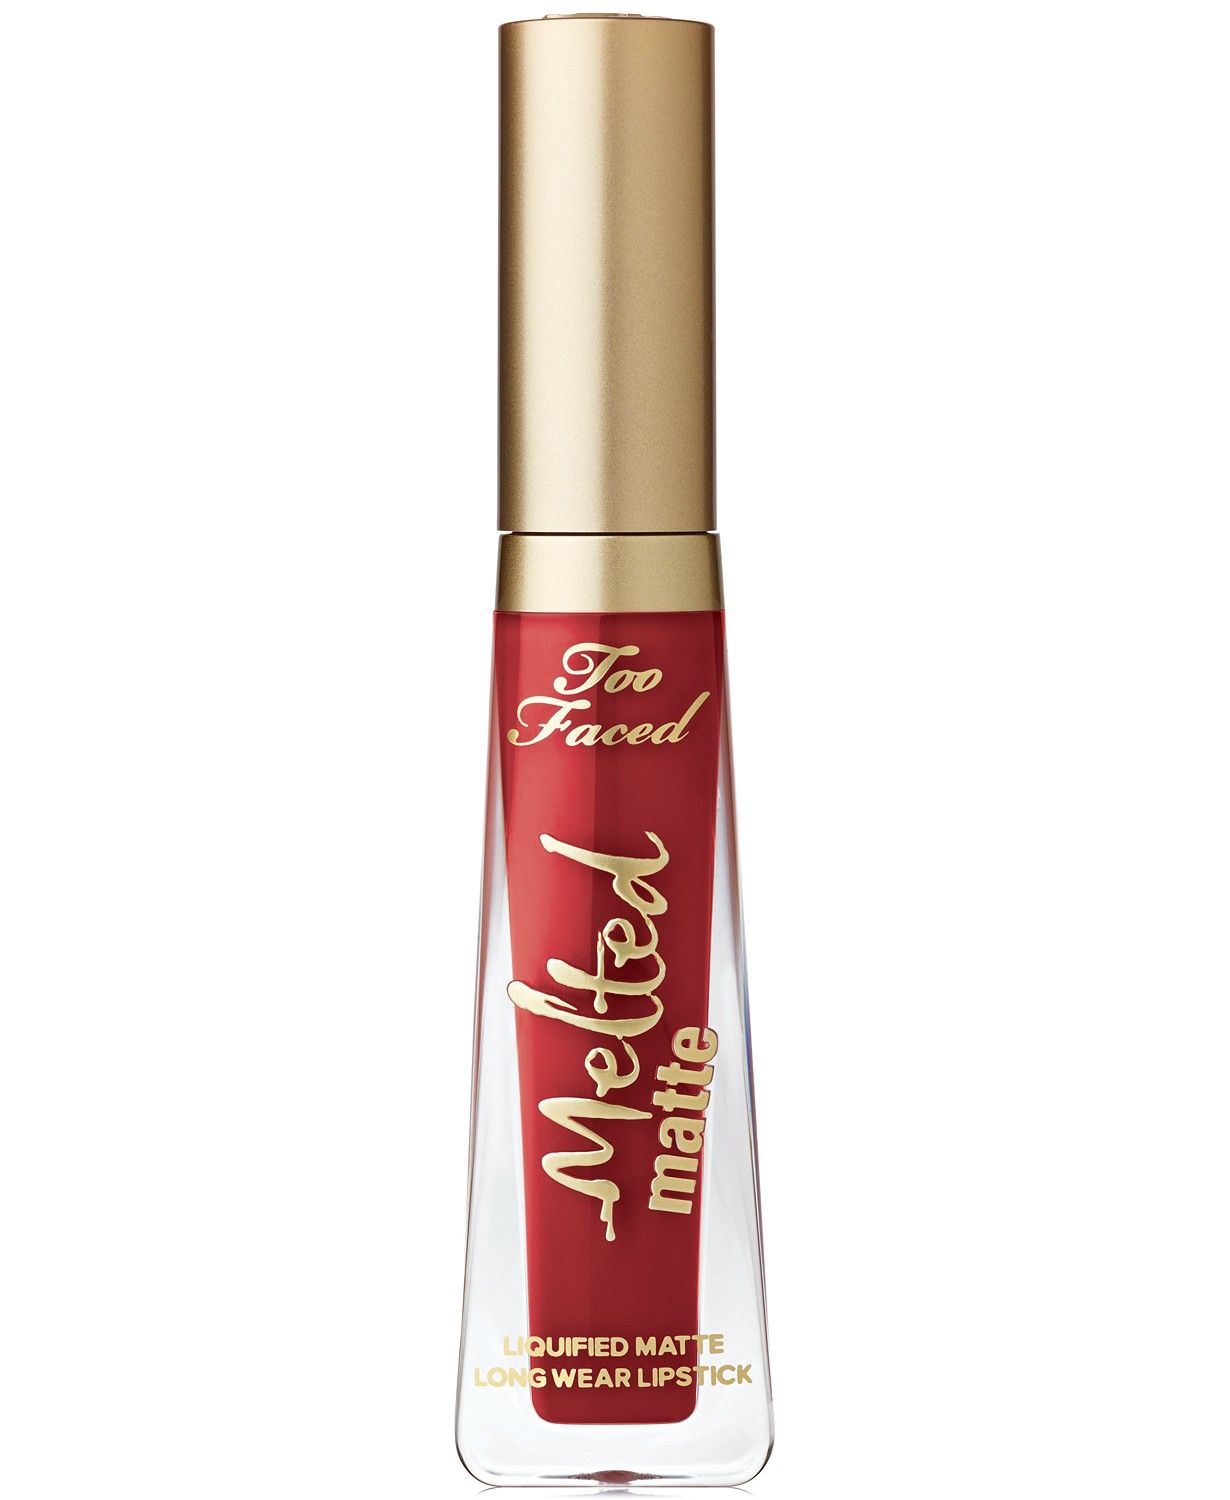 Melted Matte Liquid Lipstick | Macys (US)